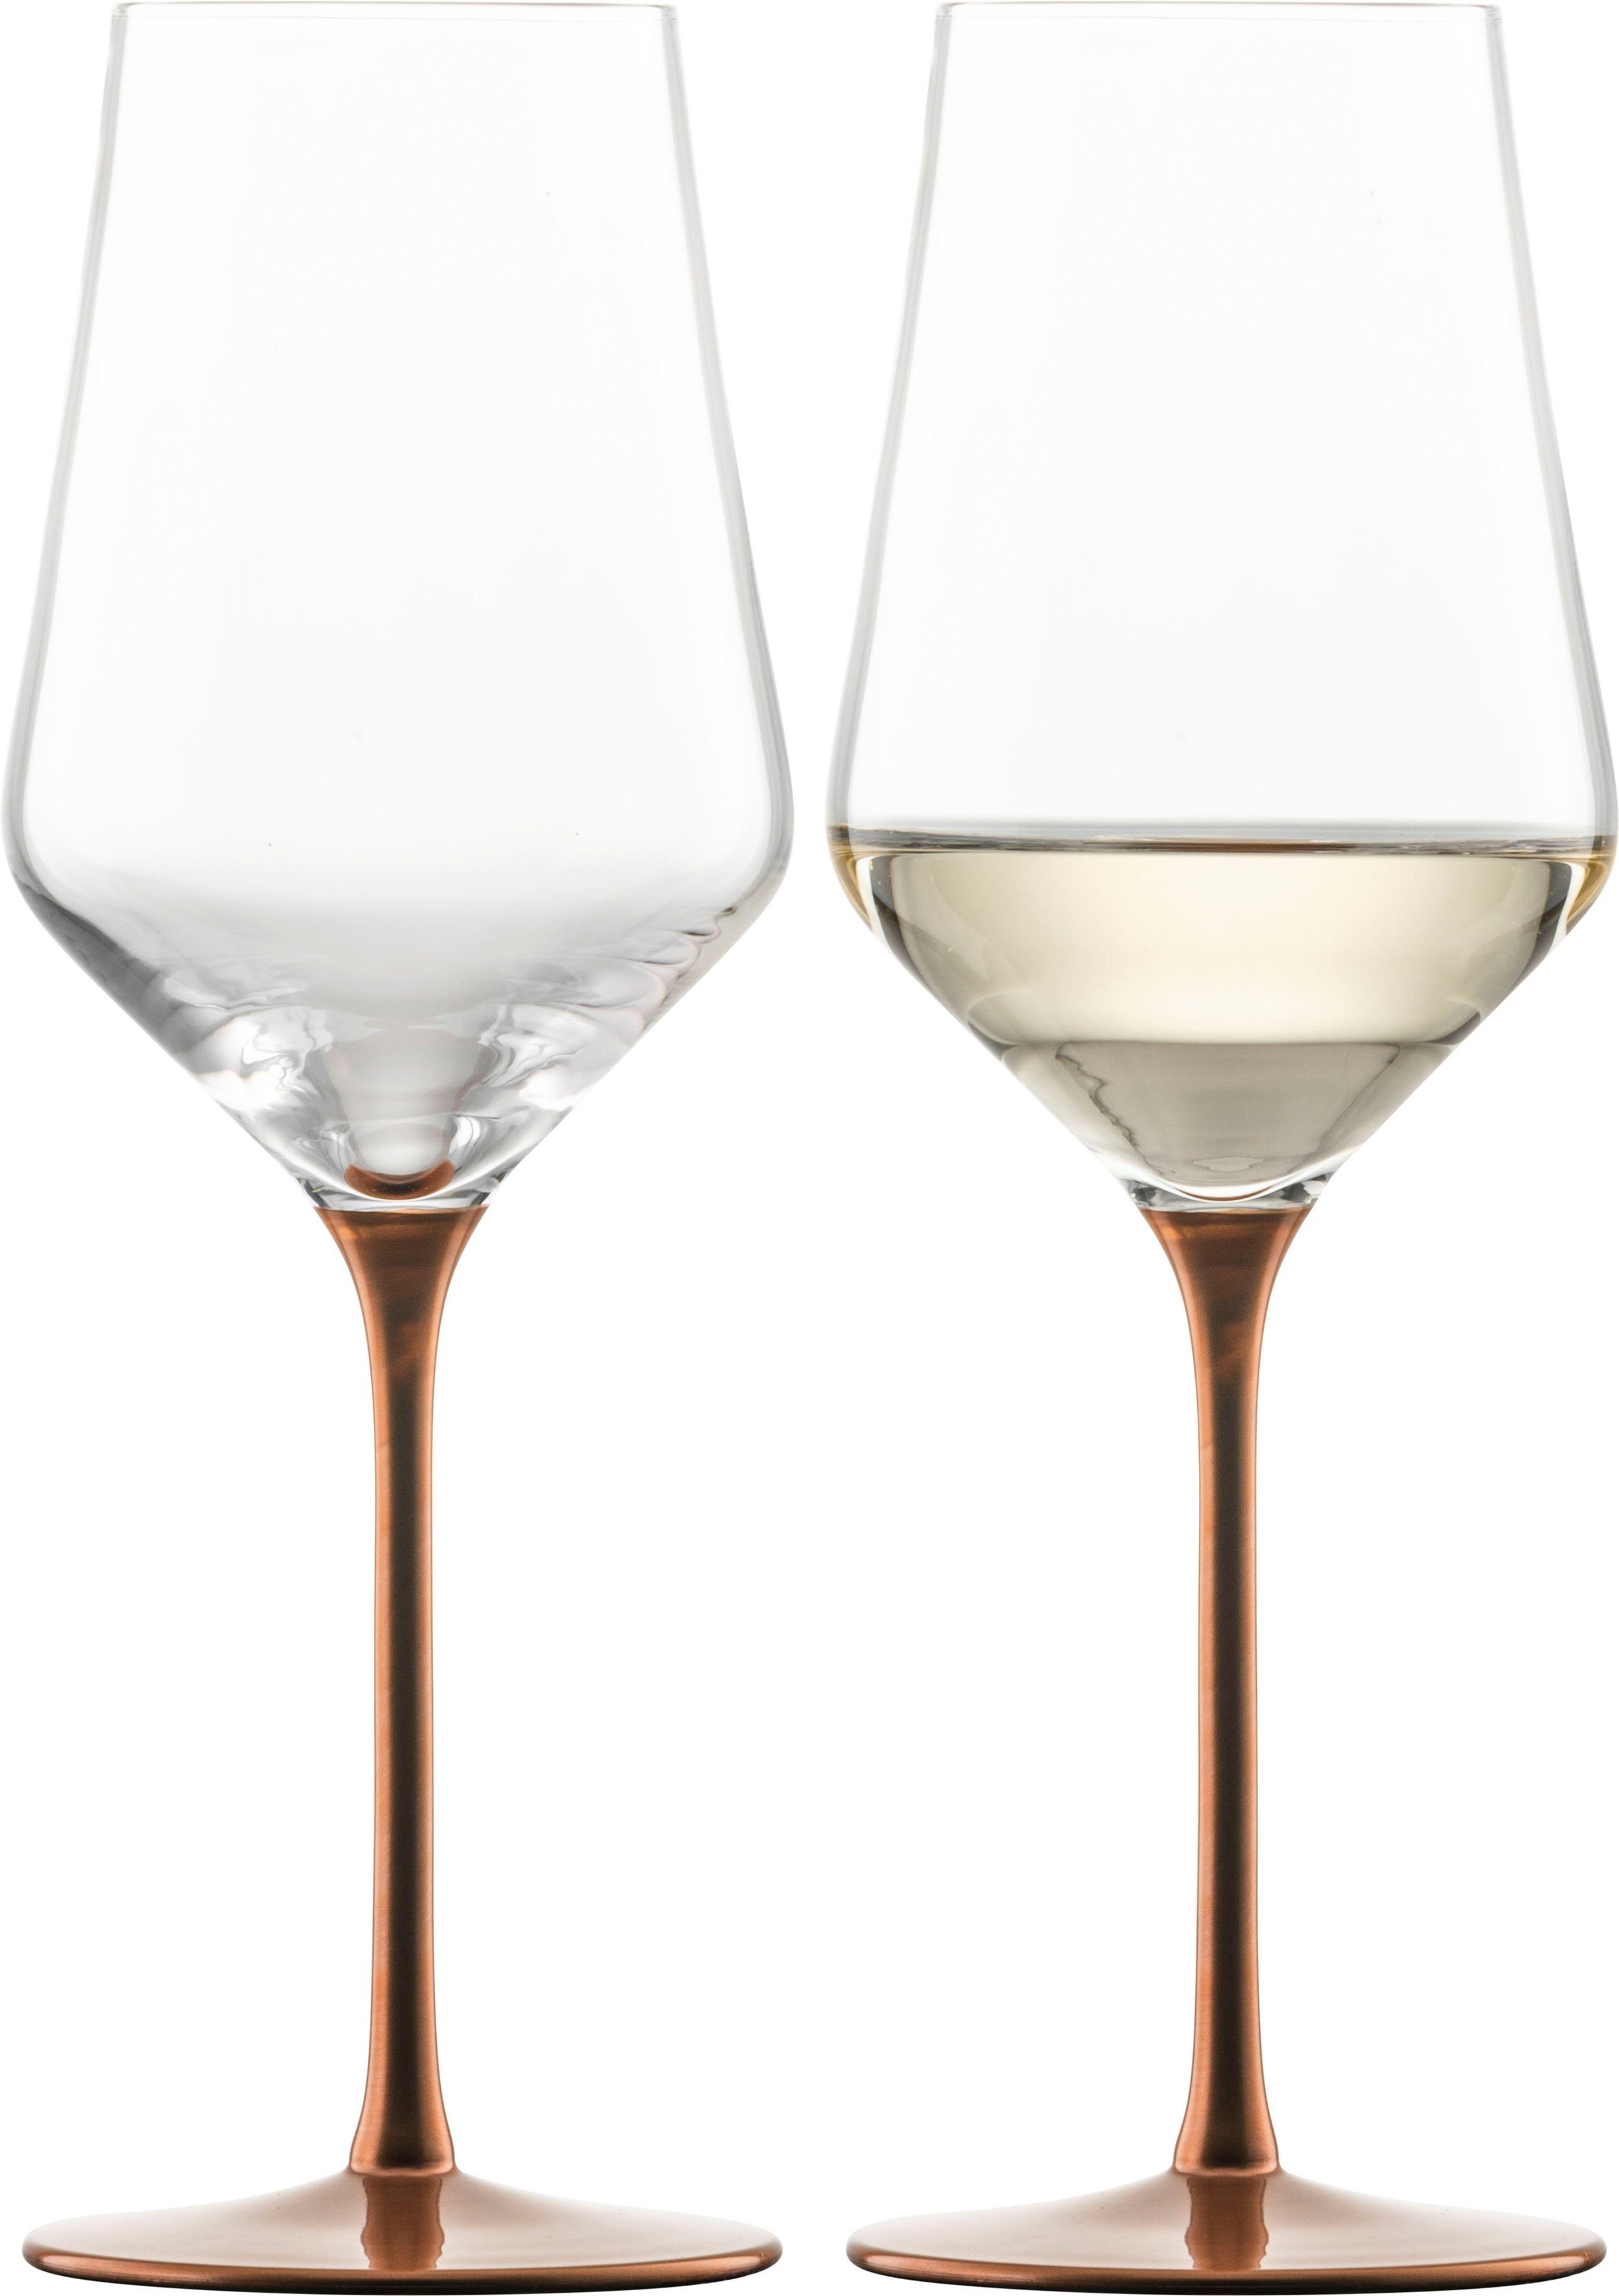 Eisch Weißweinglas KAYA, Made in Kristallglas, veredelt, Germany, mit Kupfer-Glasur 380 in ml, Handarbeit schimmernden fein